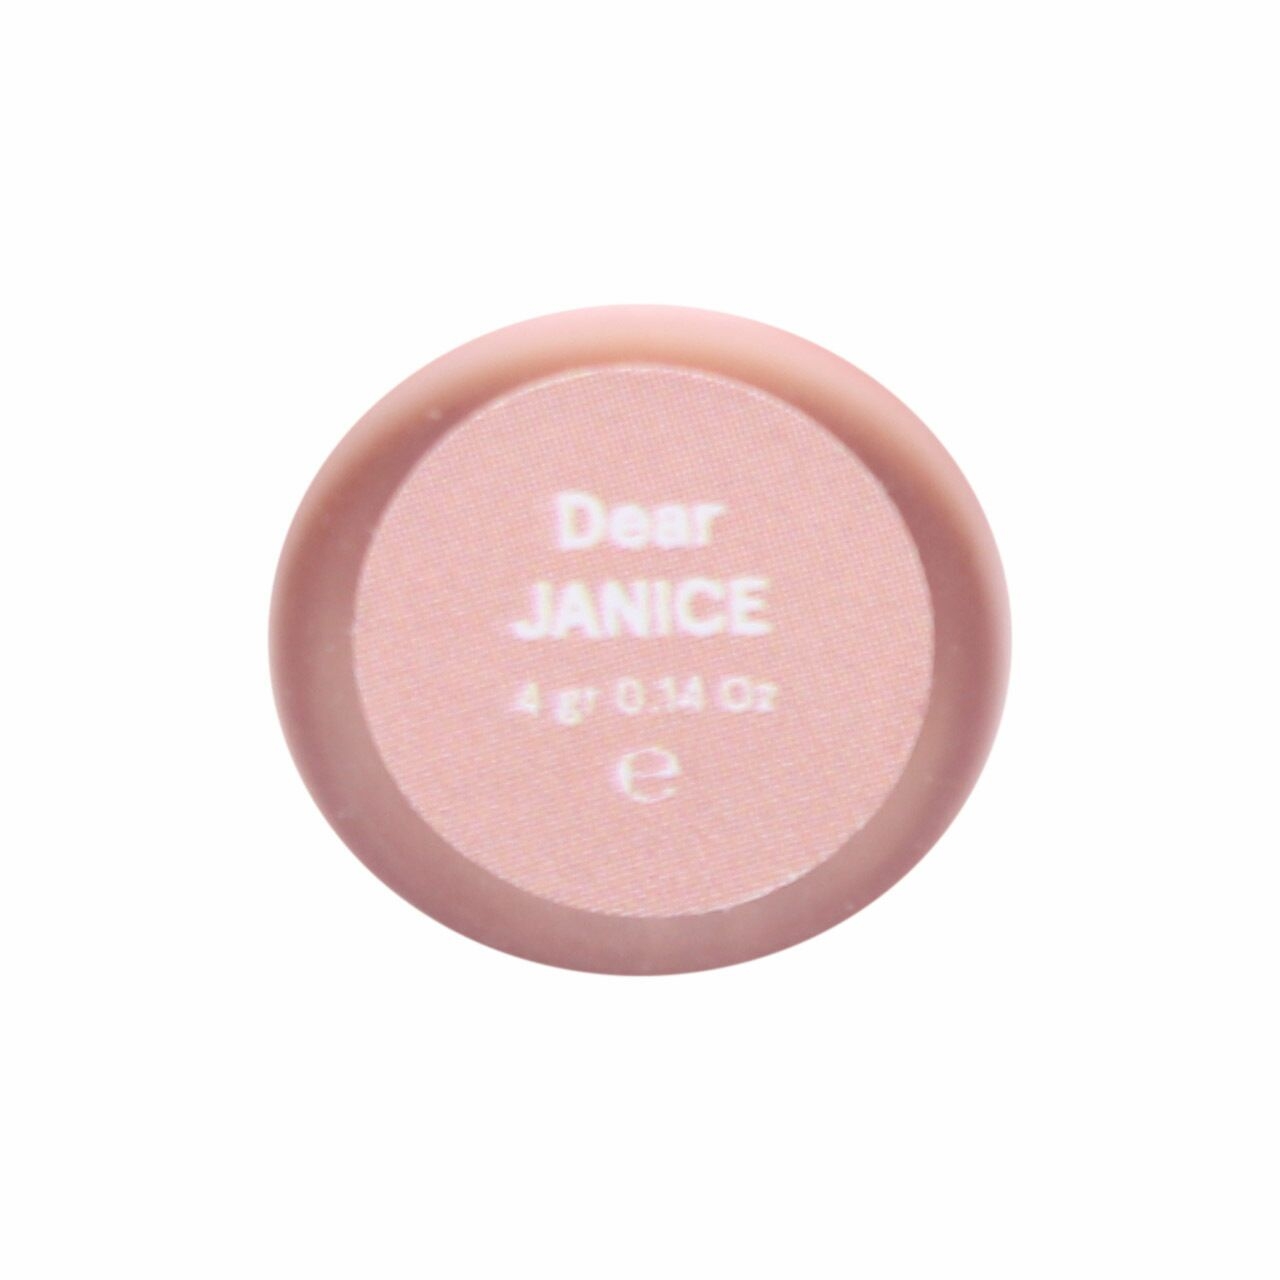 Dear Me Beauty Janice Perfect Matte Lip Coat Lips